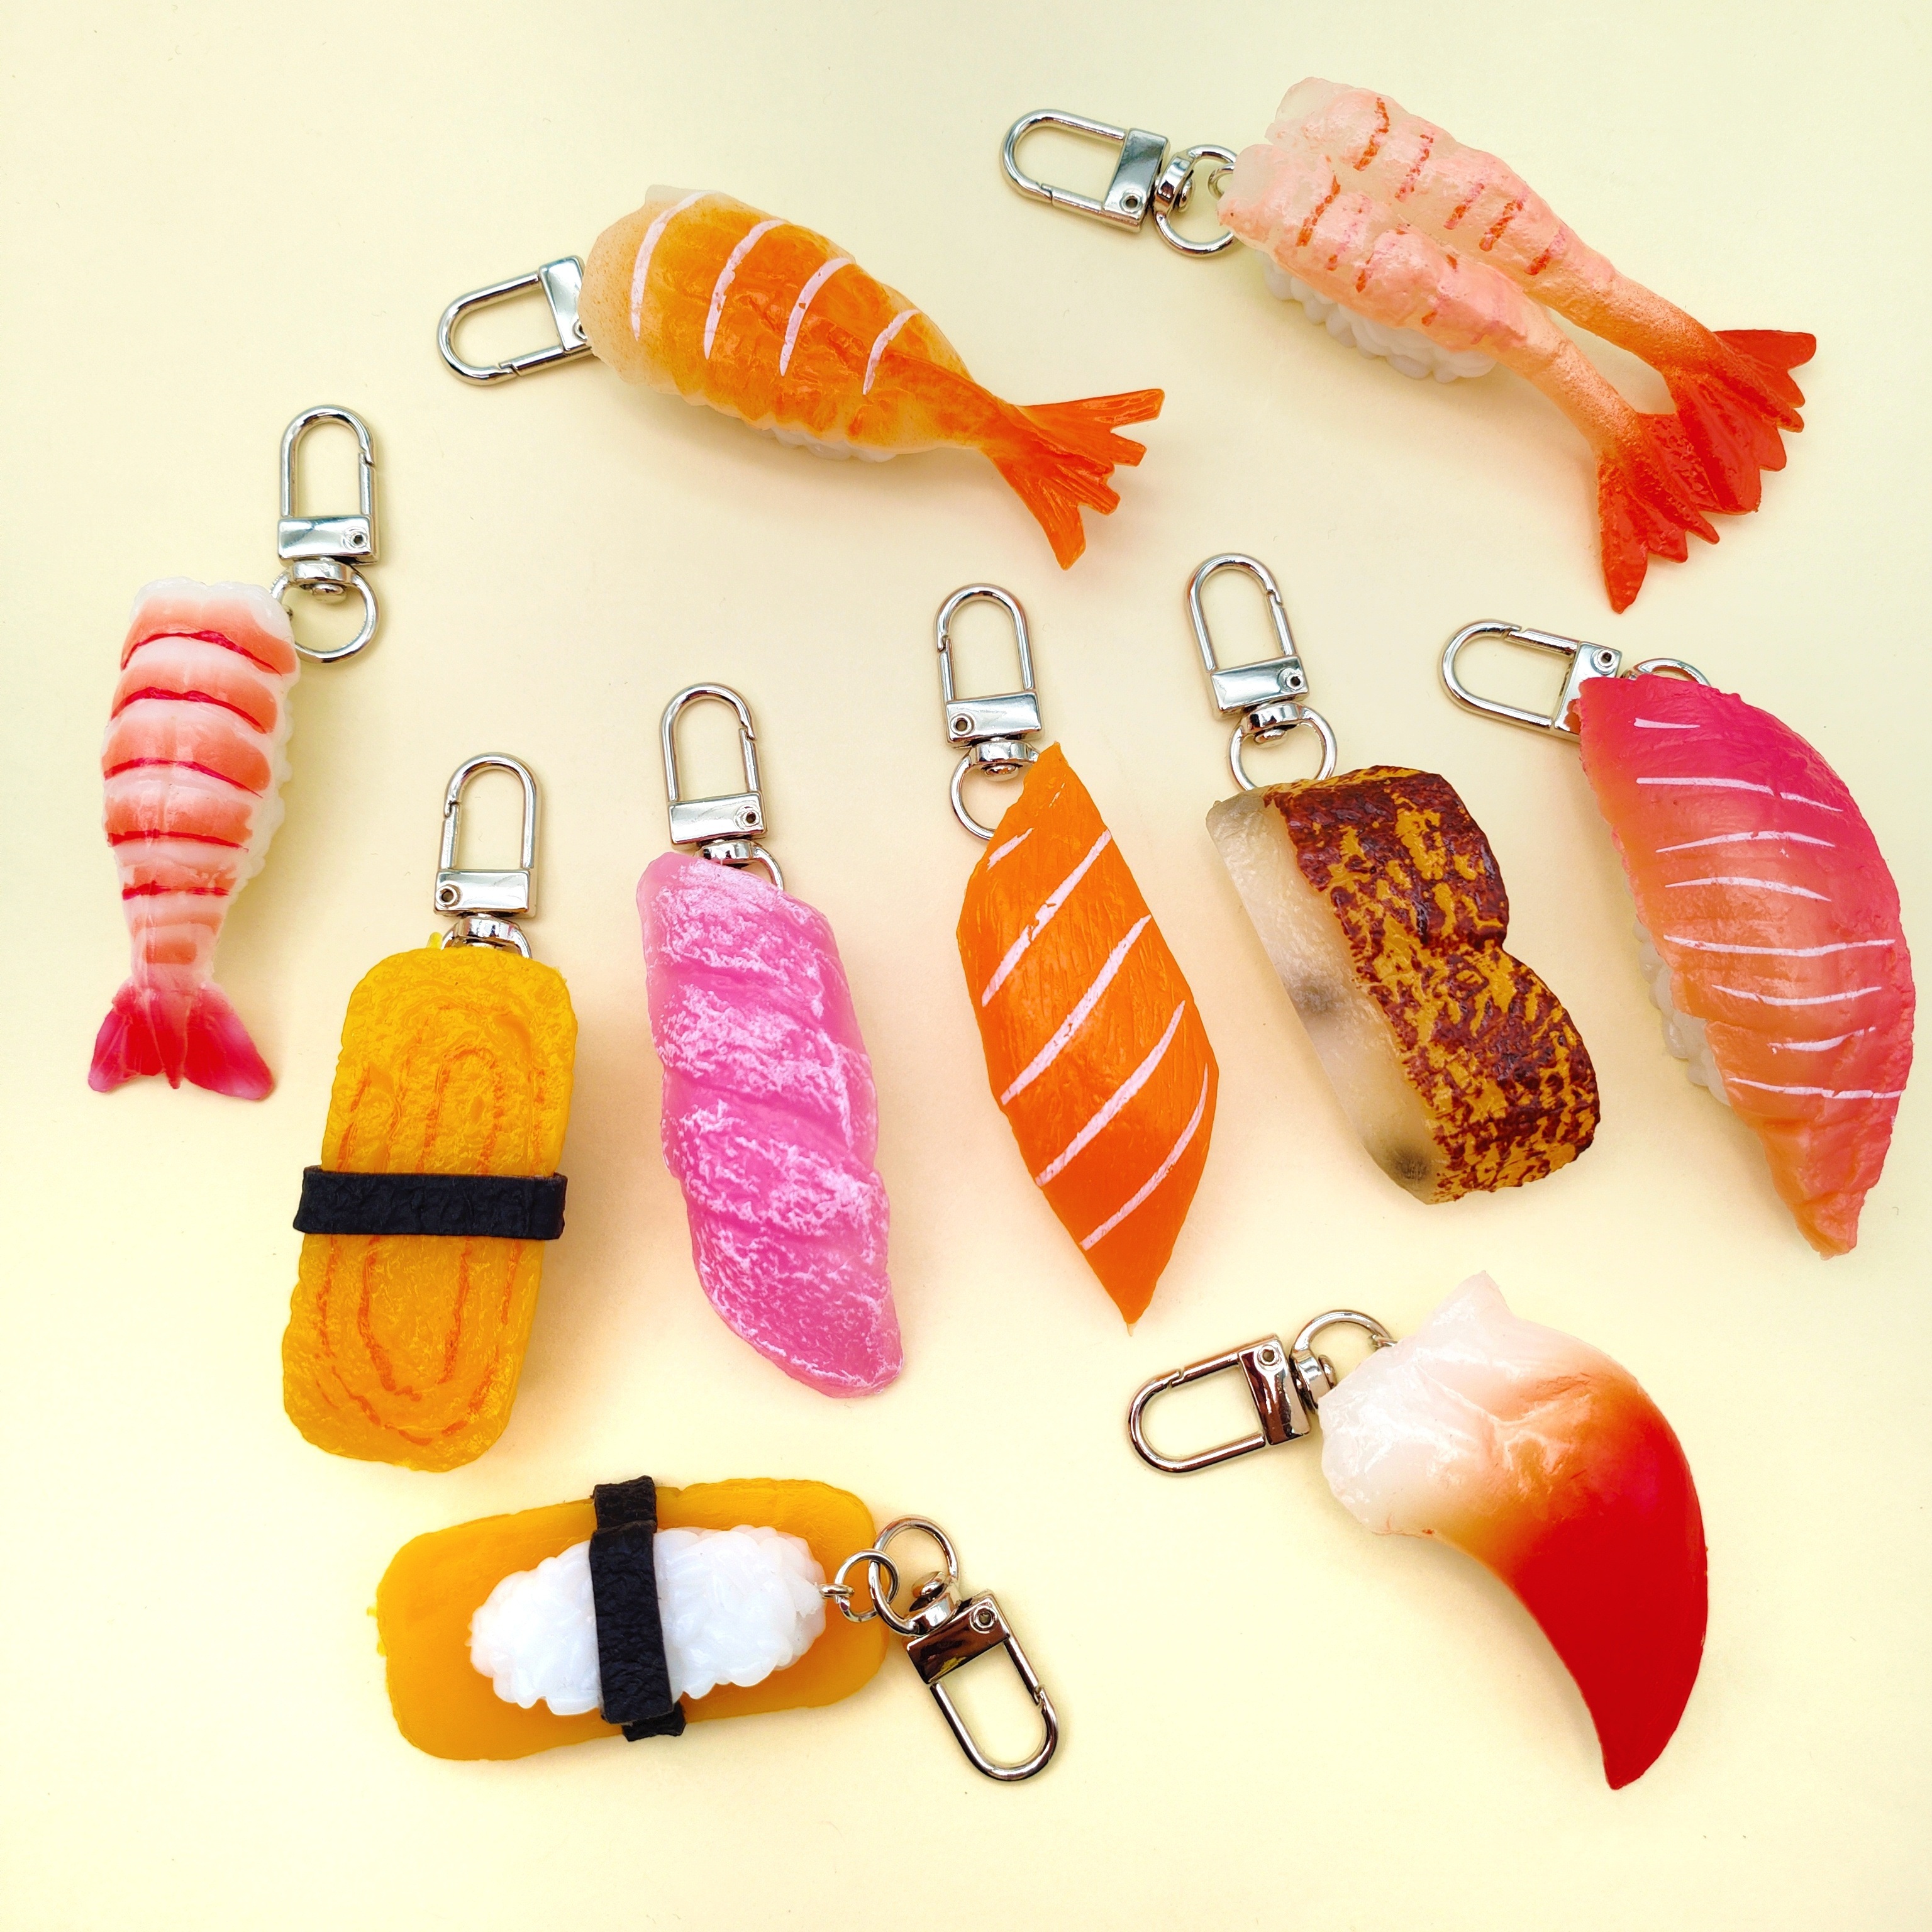 仿真日式寿司模型料理三文鱼书包汽车钥匙扣链挂件旅游纪念品玩具